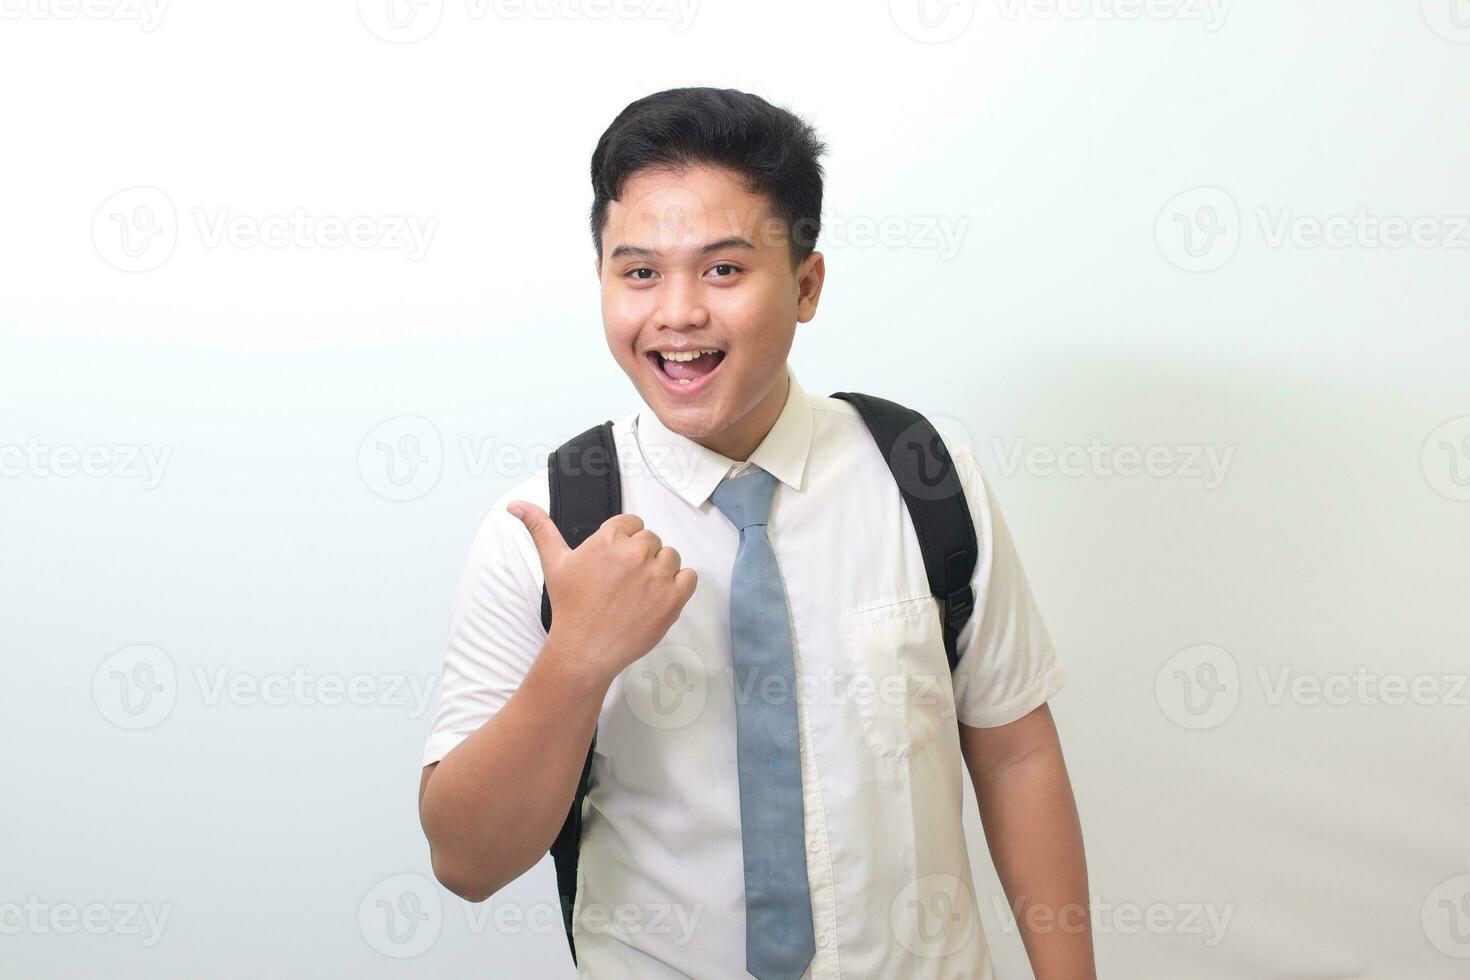 indonesisch Senior hoch Schule Schüler tragen Weiß Hemd Uniform mit grau Krawatte zeigen Produkt, zeigen beim etwas und lächelnd. isoliert Bild auf Weiß Hintergrund foto